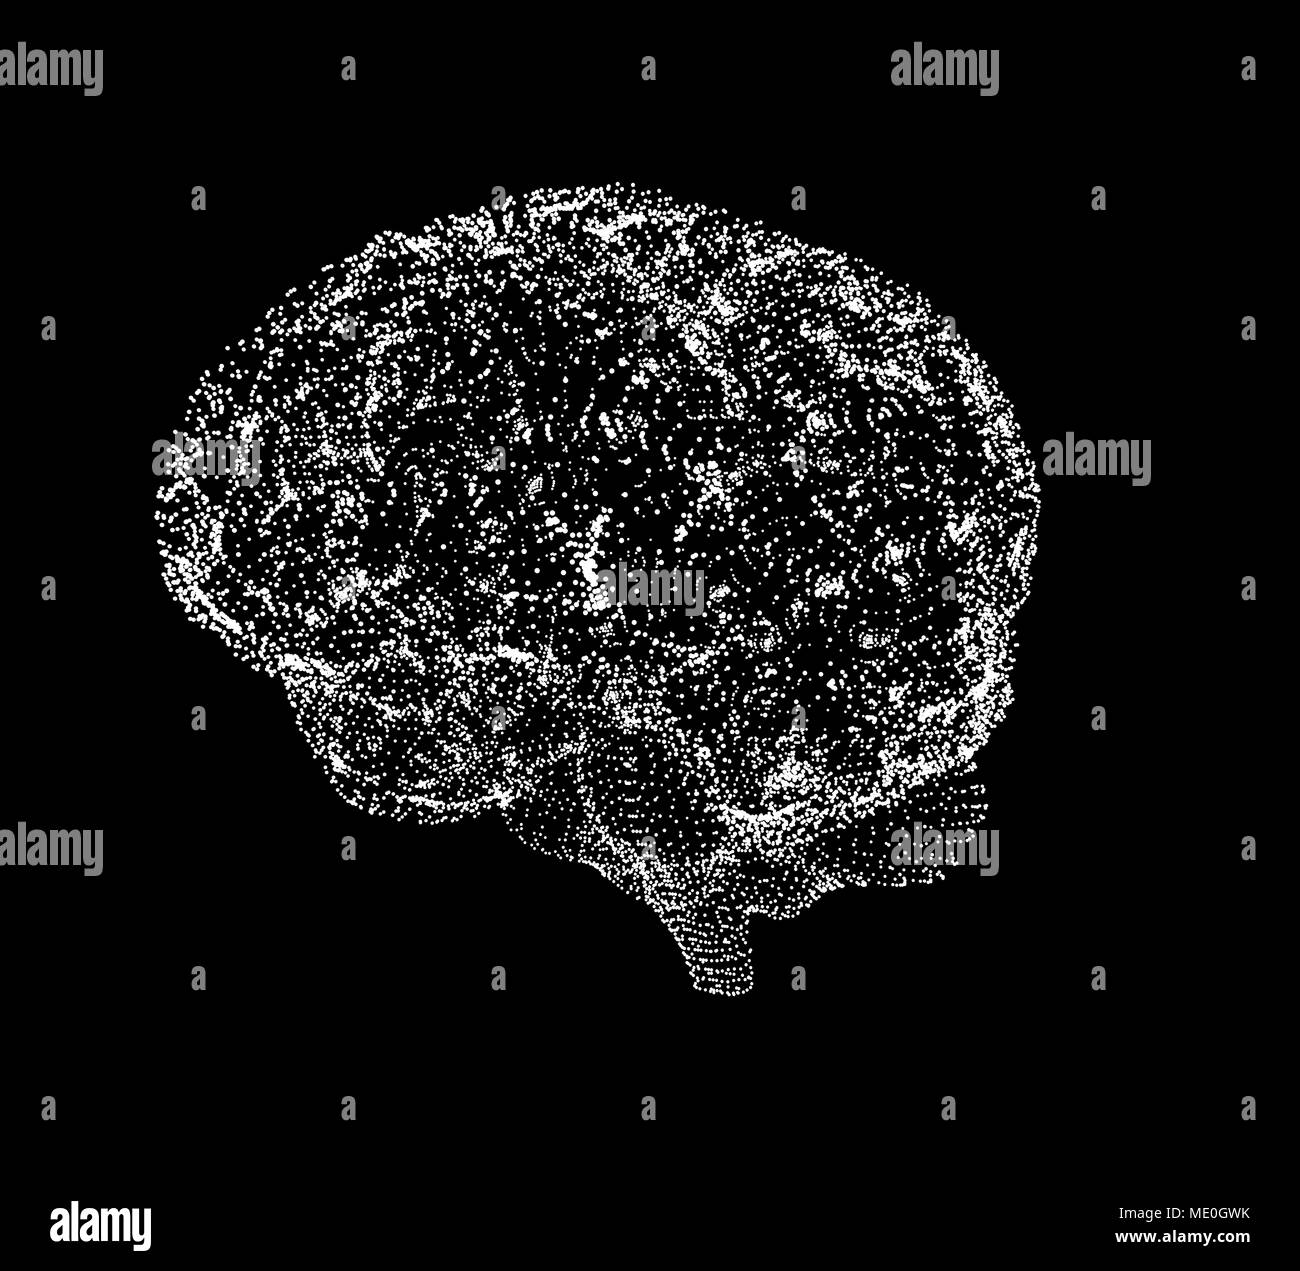 Cerveau humain, ordinateur conceptuel illustration. Banque D'Images